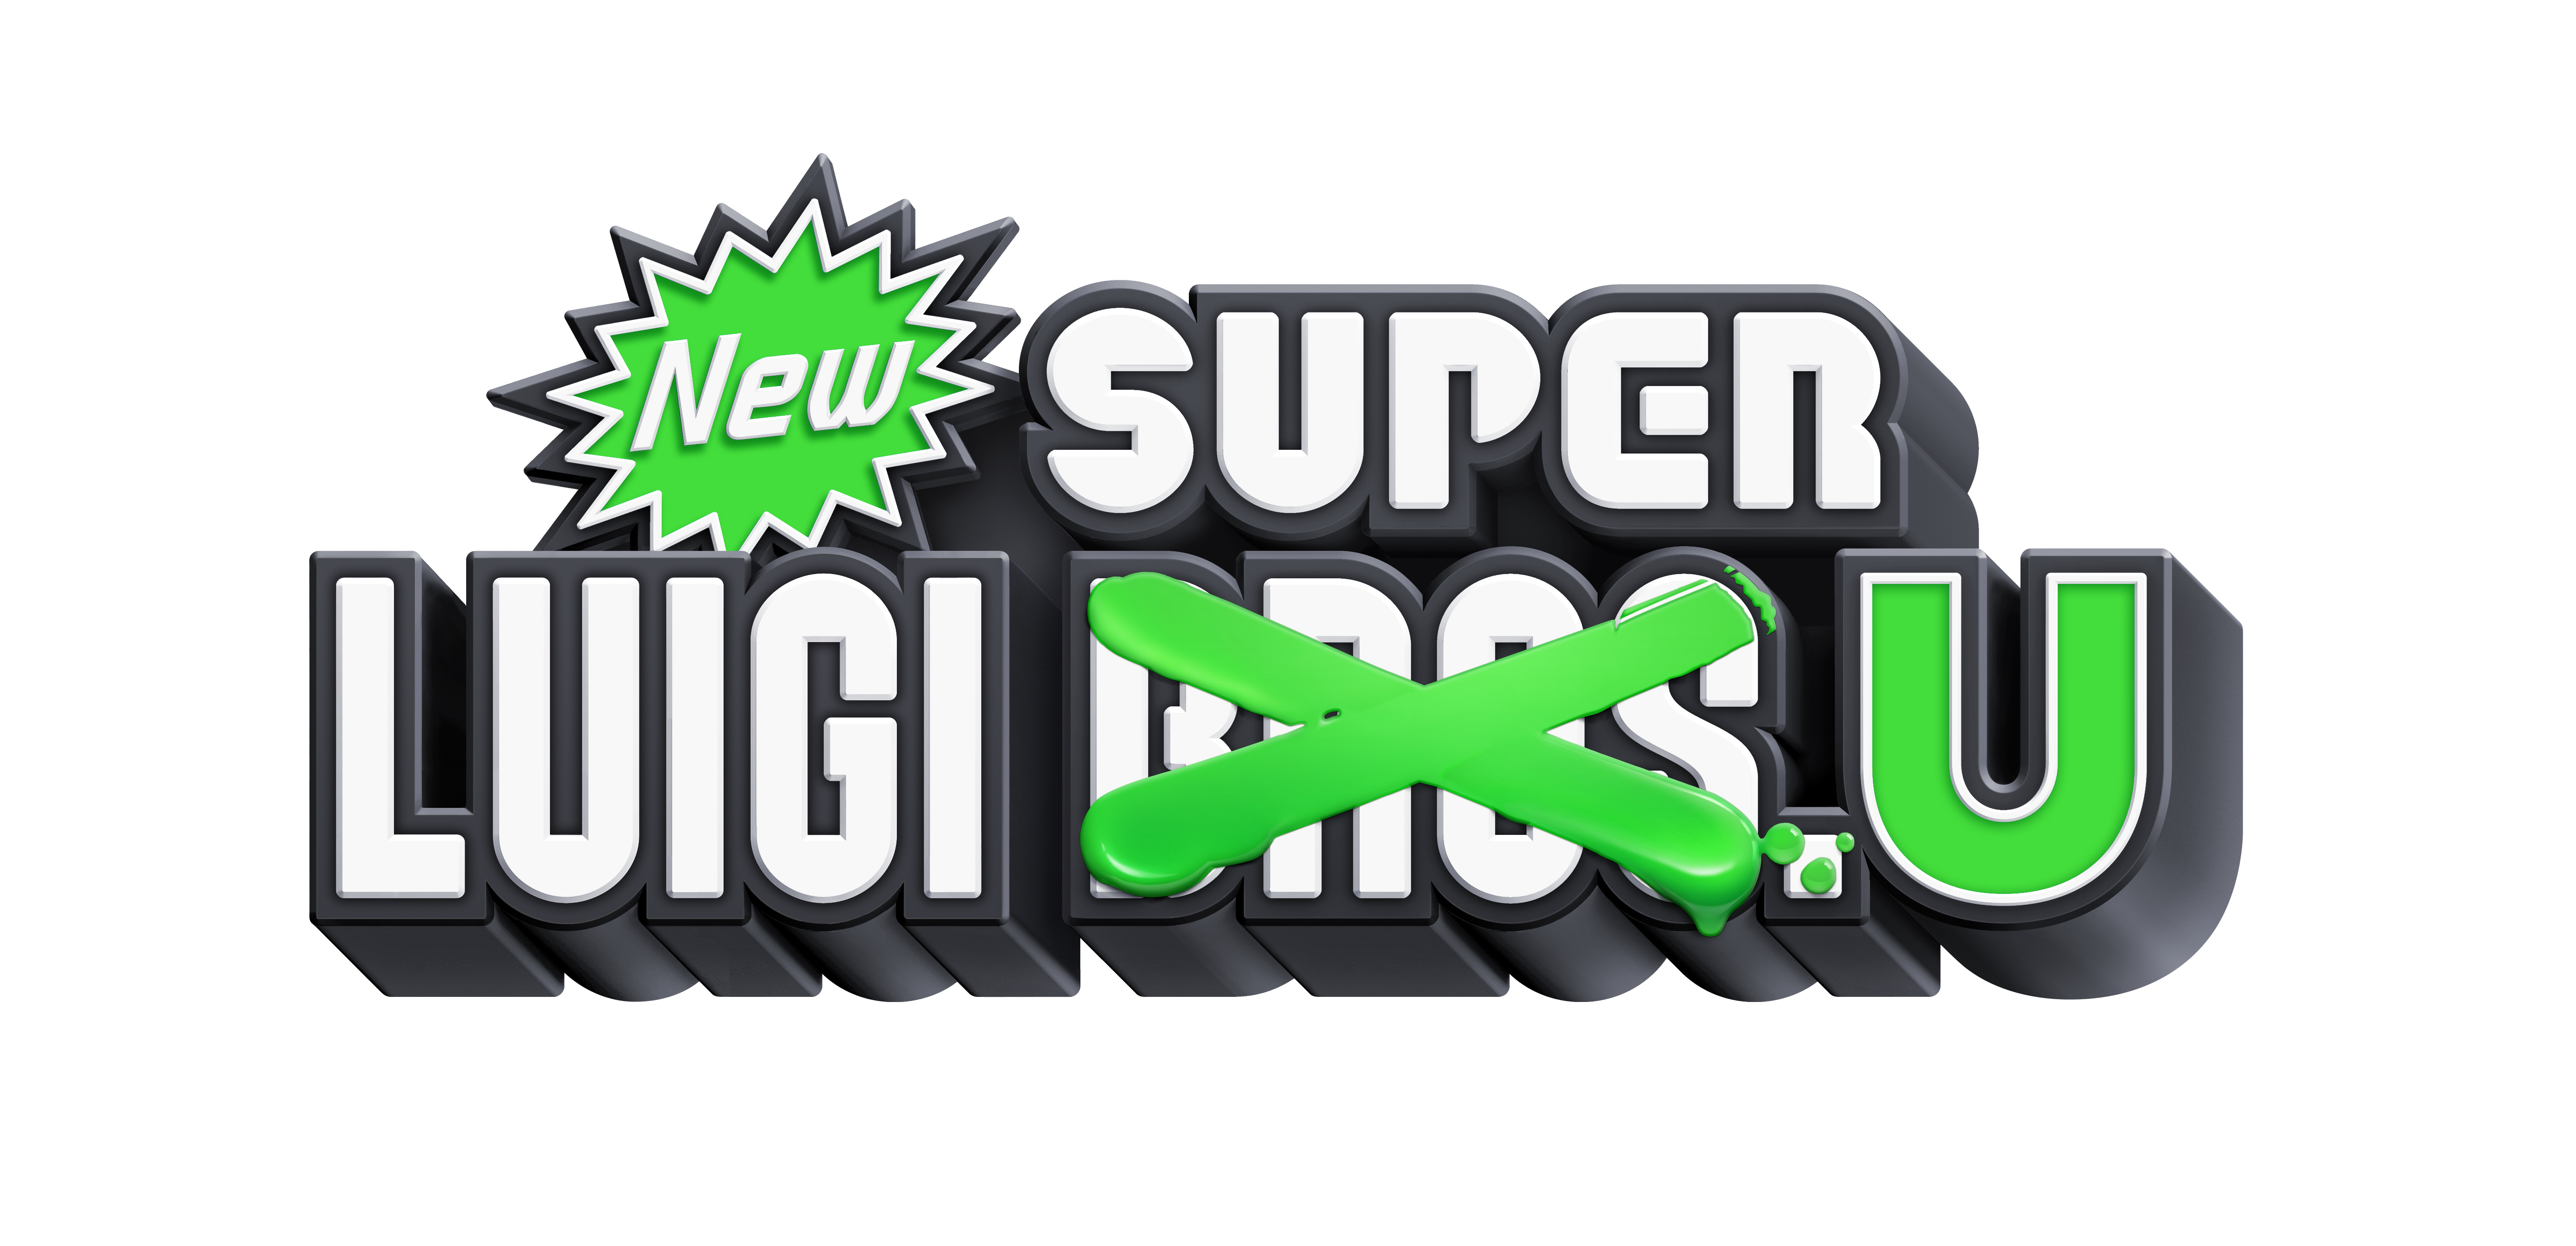 New Super Luigi U #21